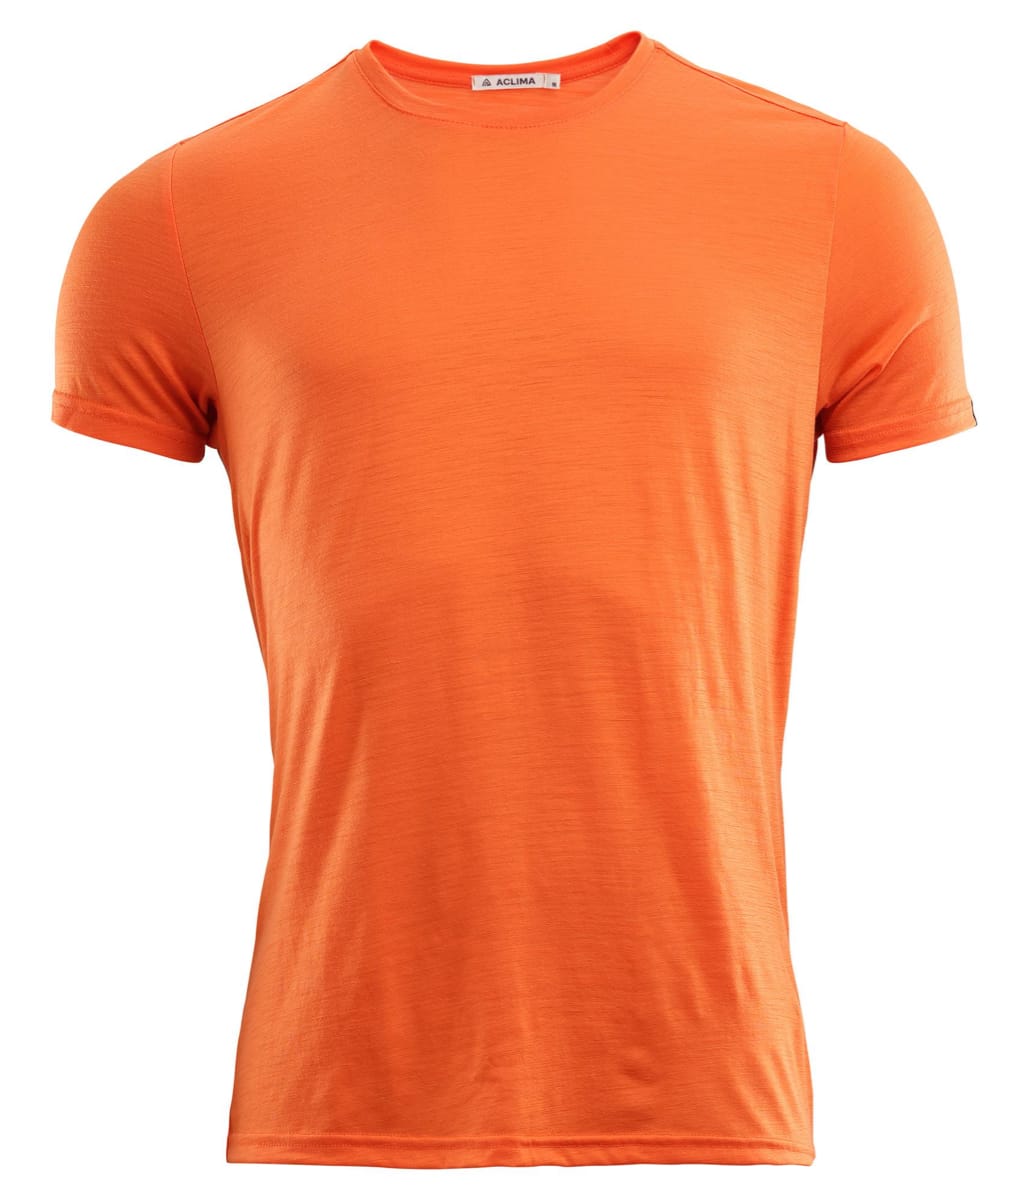 Aclima Men's LightWool T-shirt Round Neck Orange Tiger